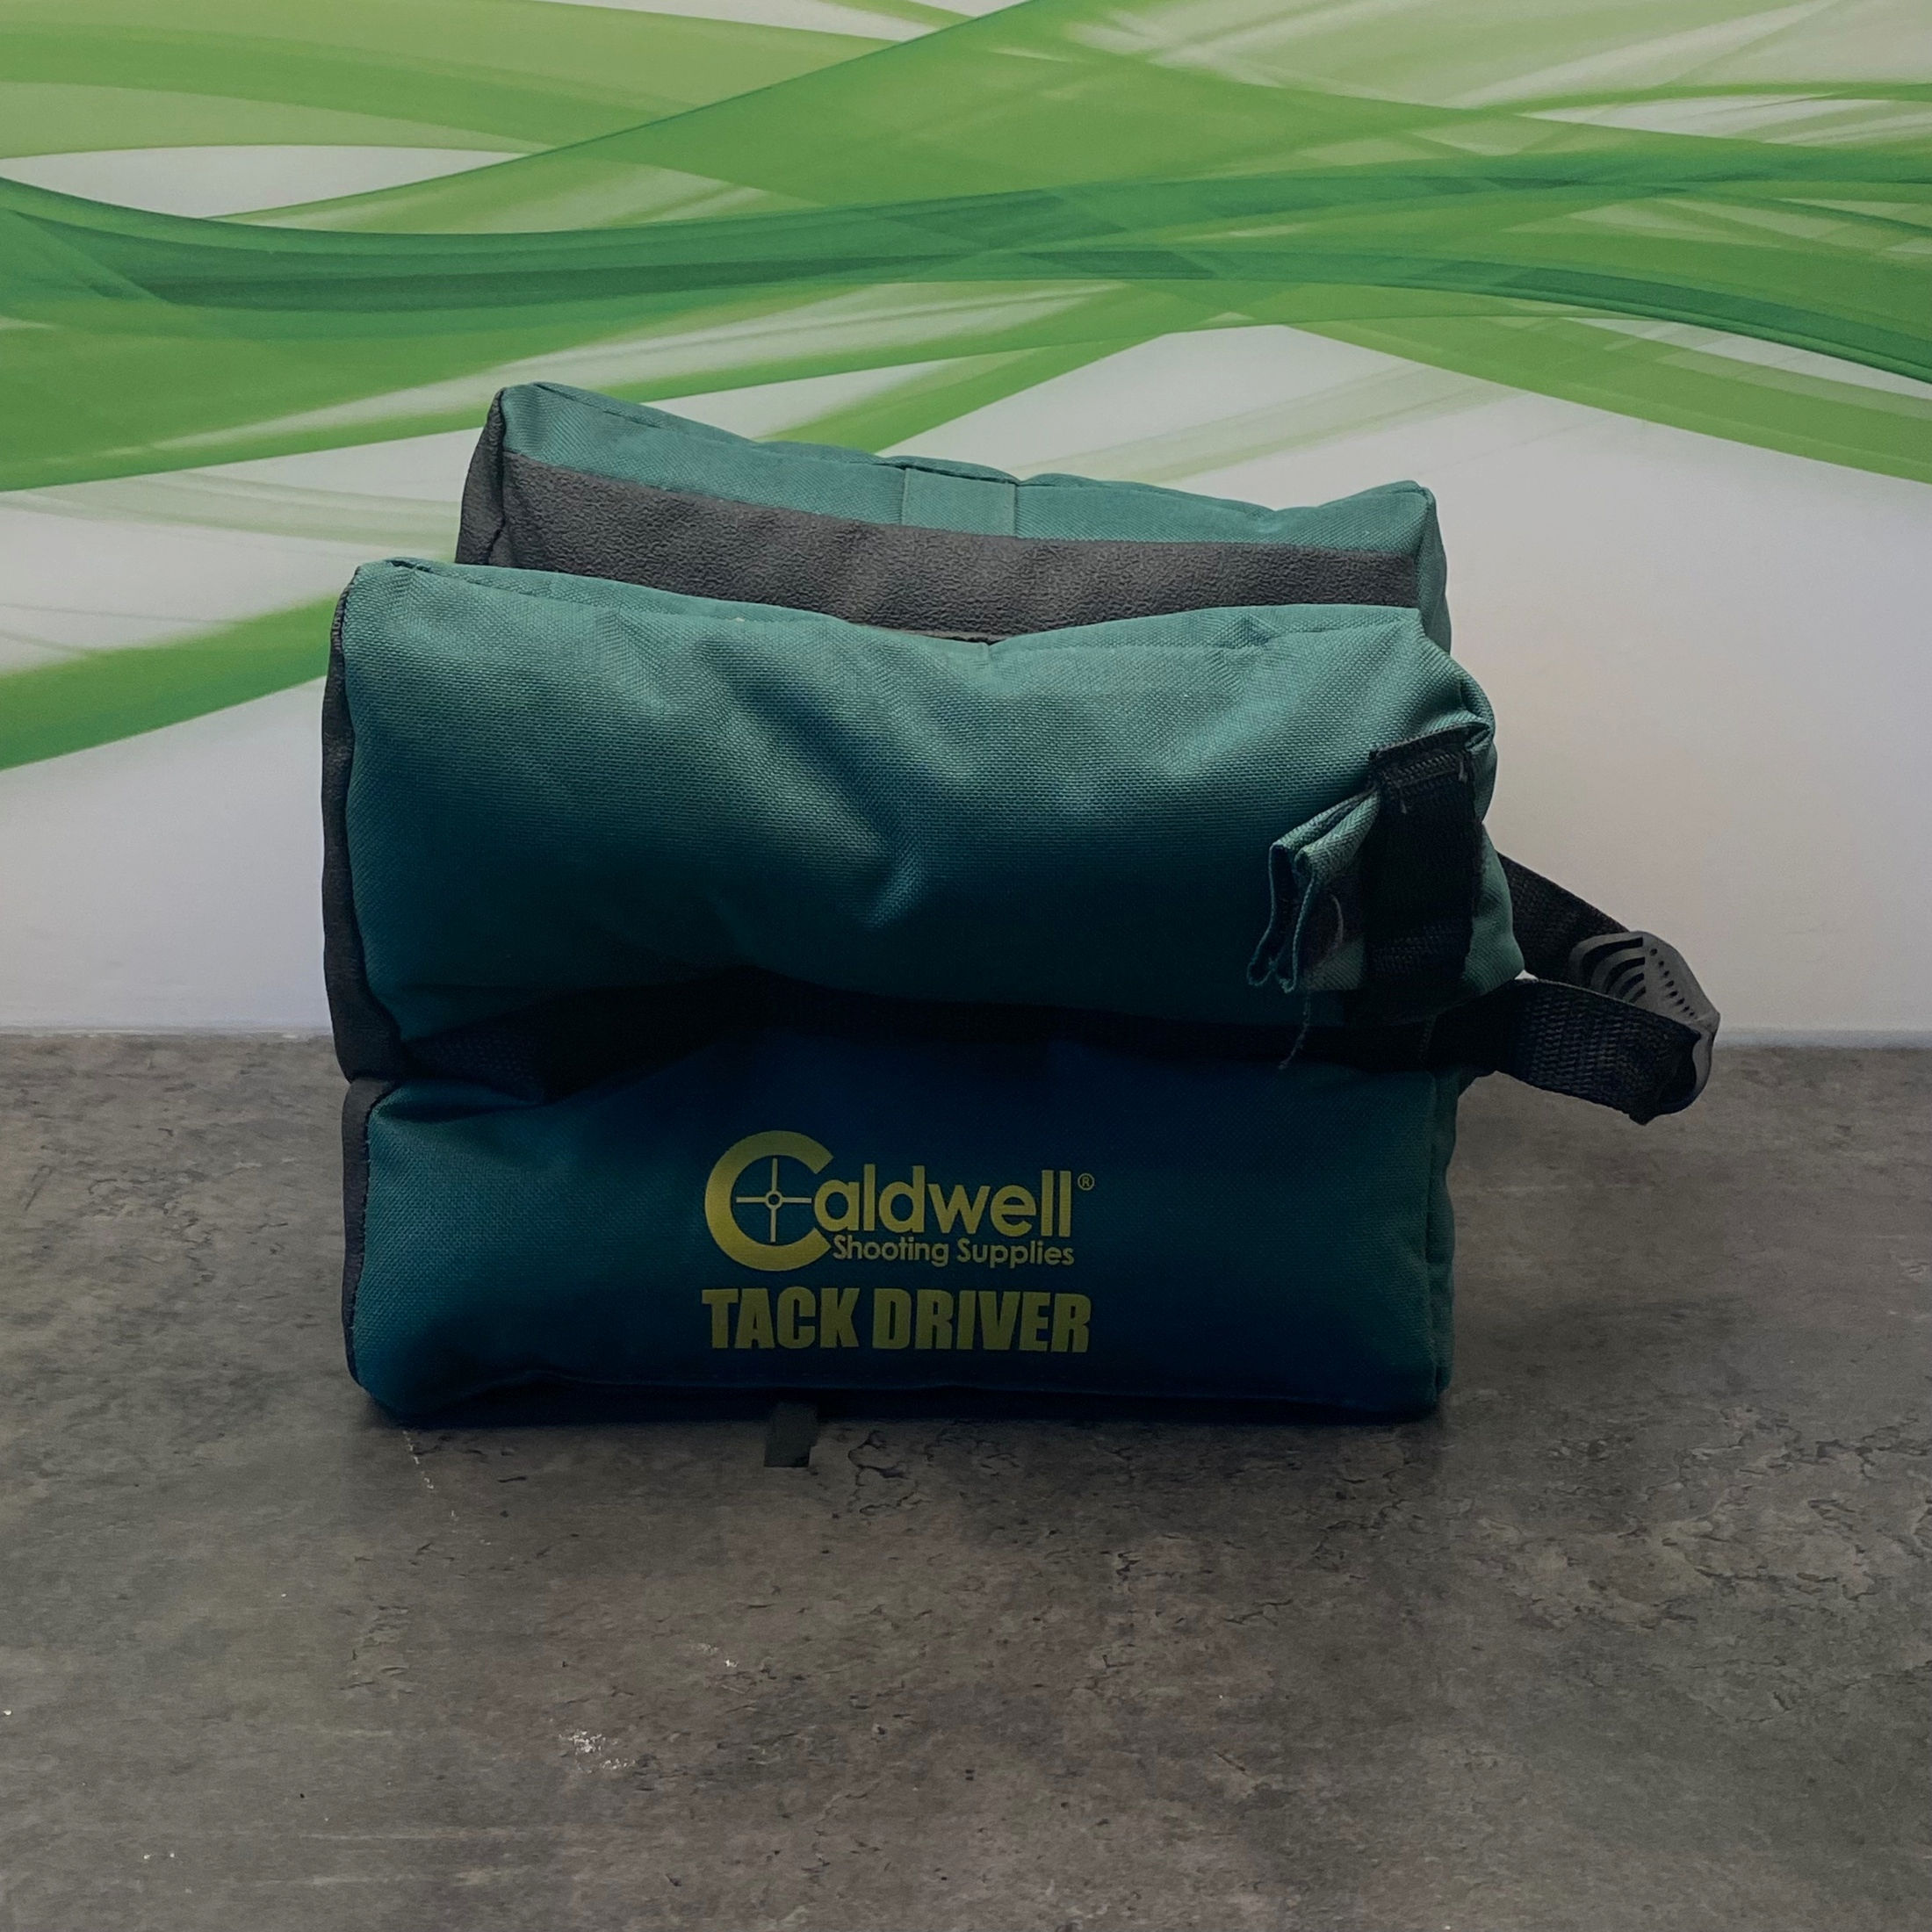 Caldwell Tack Driver Bag Schiessauflage Stand befüllt neu !